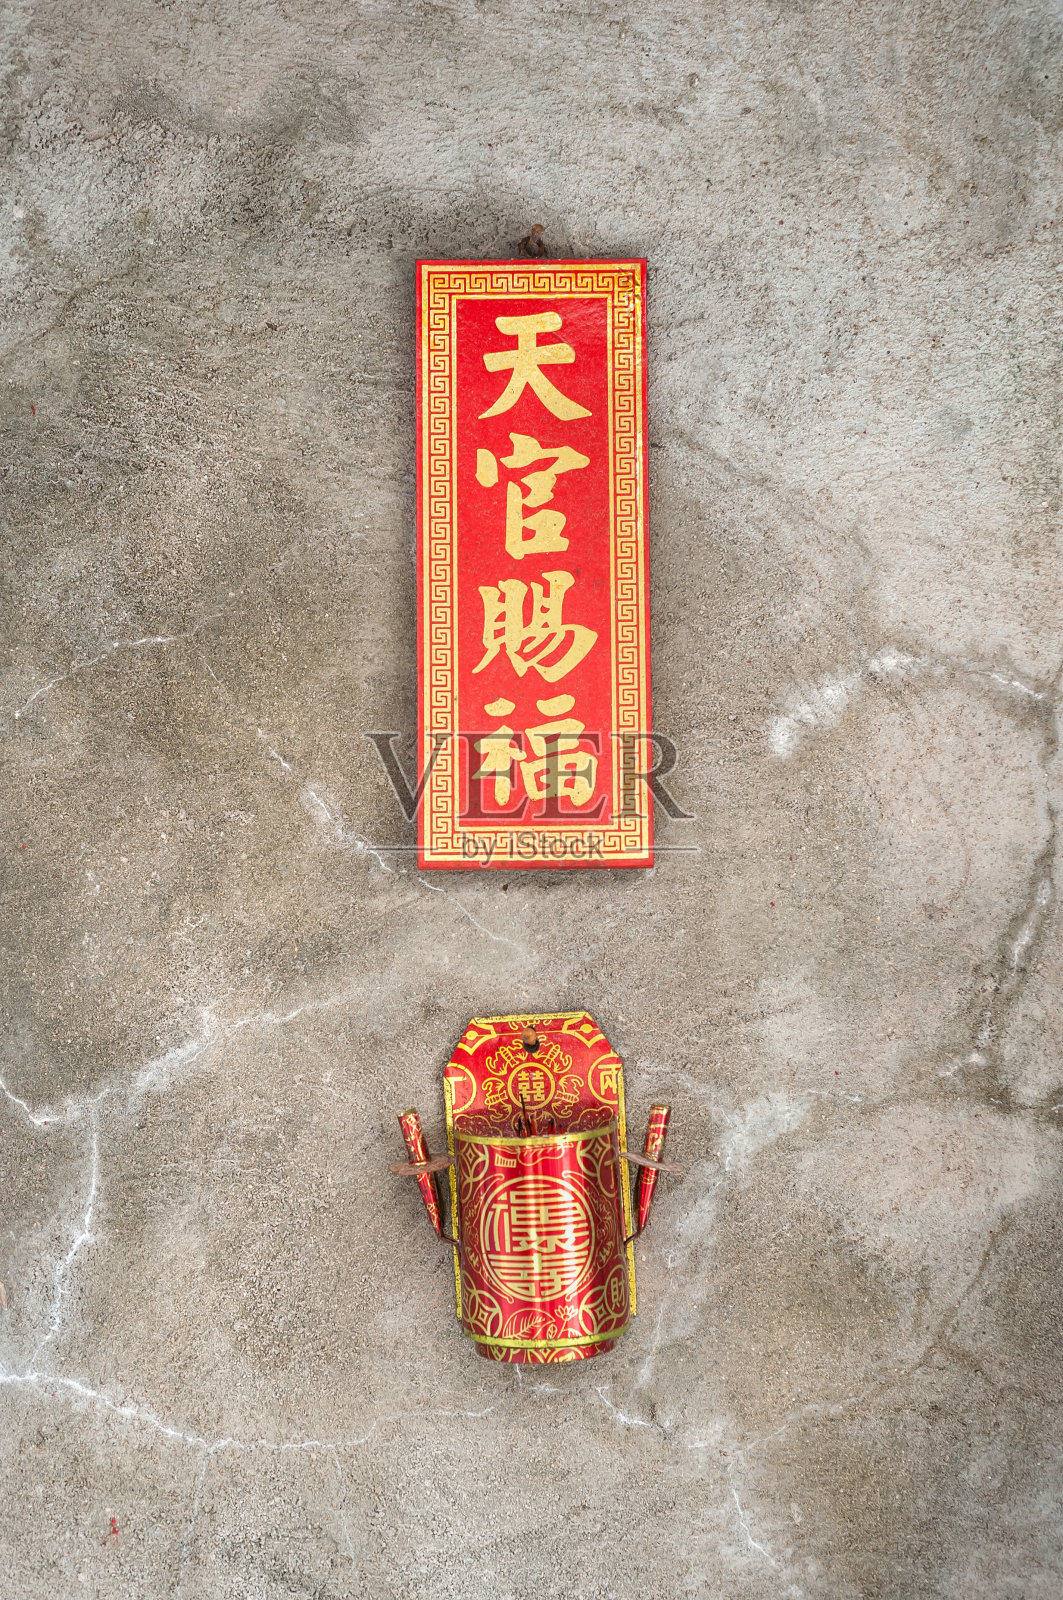 天官神龛挂在香港的一堵墙上照片摄影图片